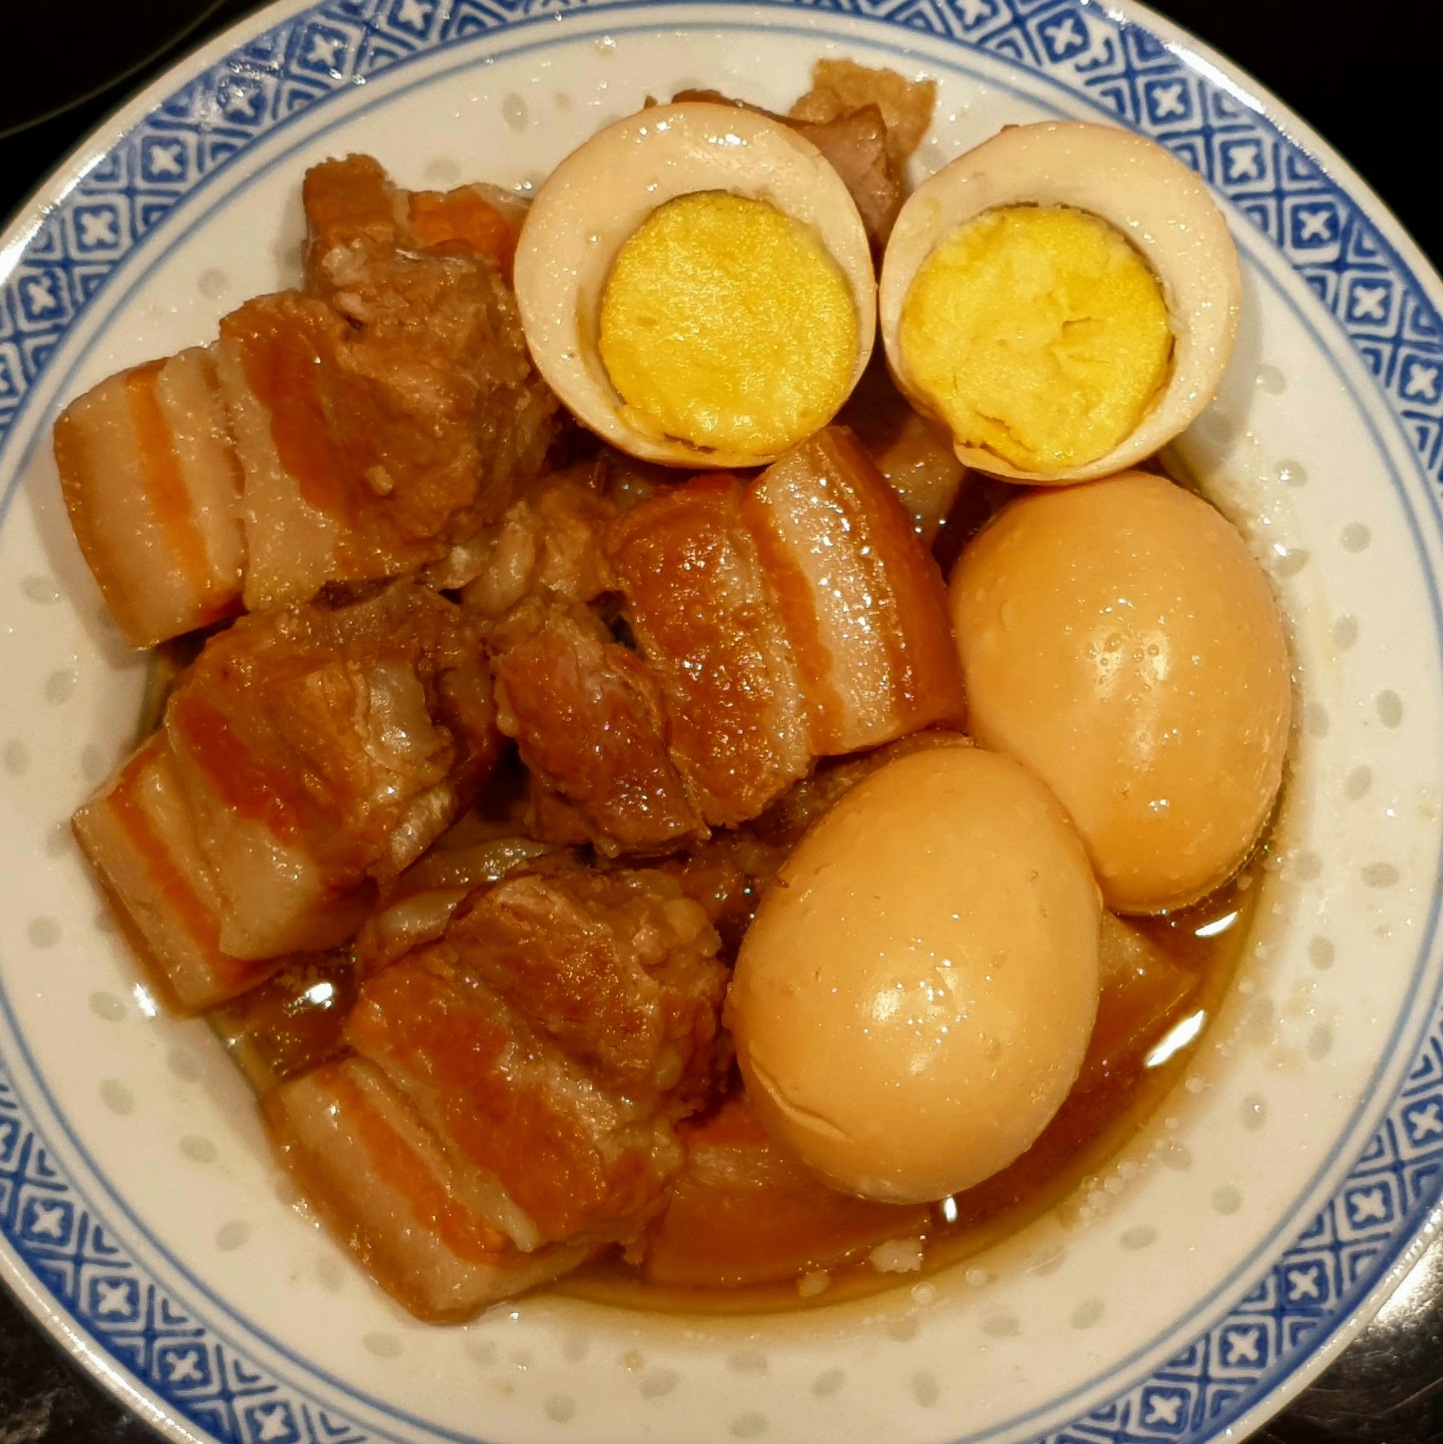 Porc au caramel et aux œufs | Thit Kho Trung - www.tulinhduong.com